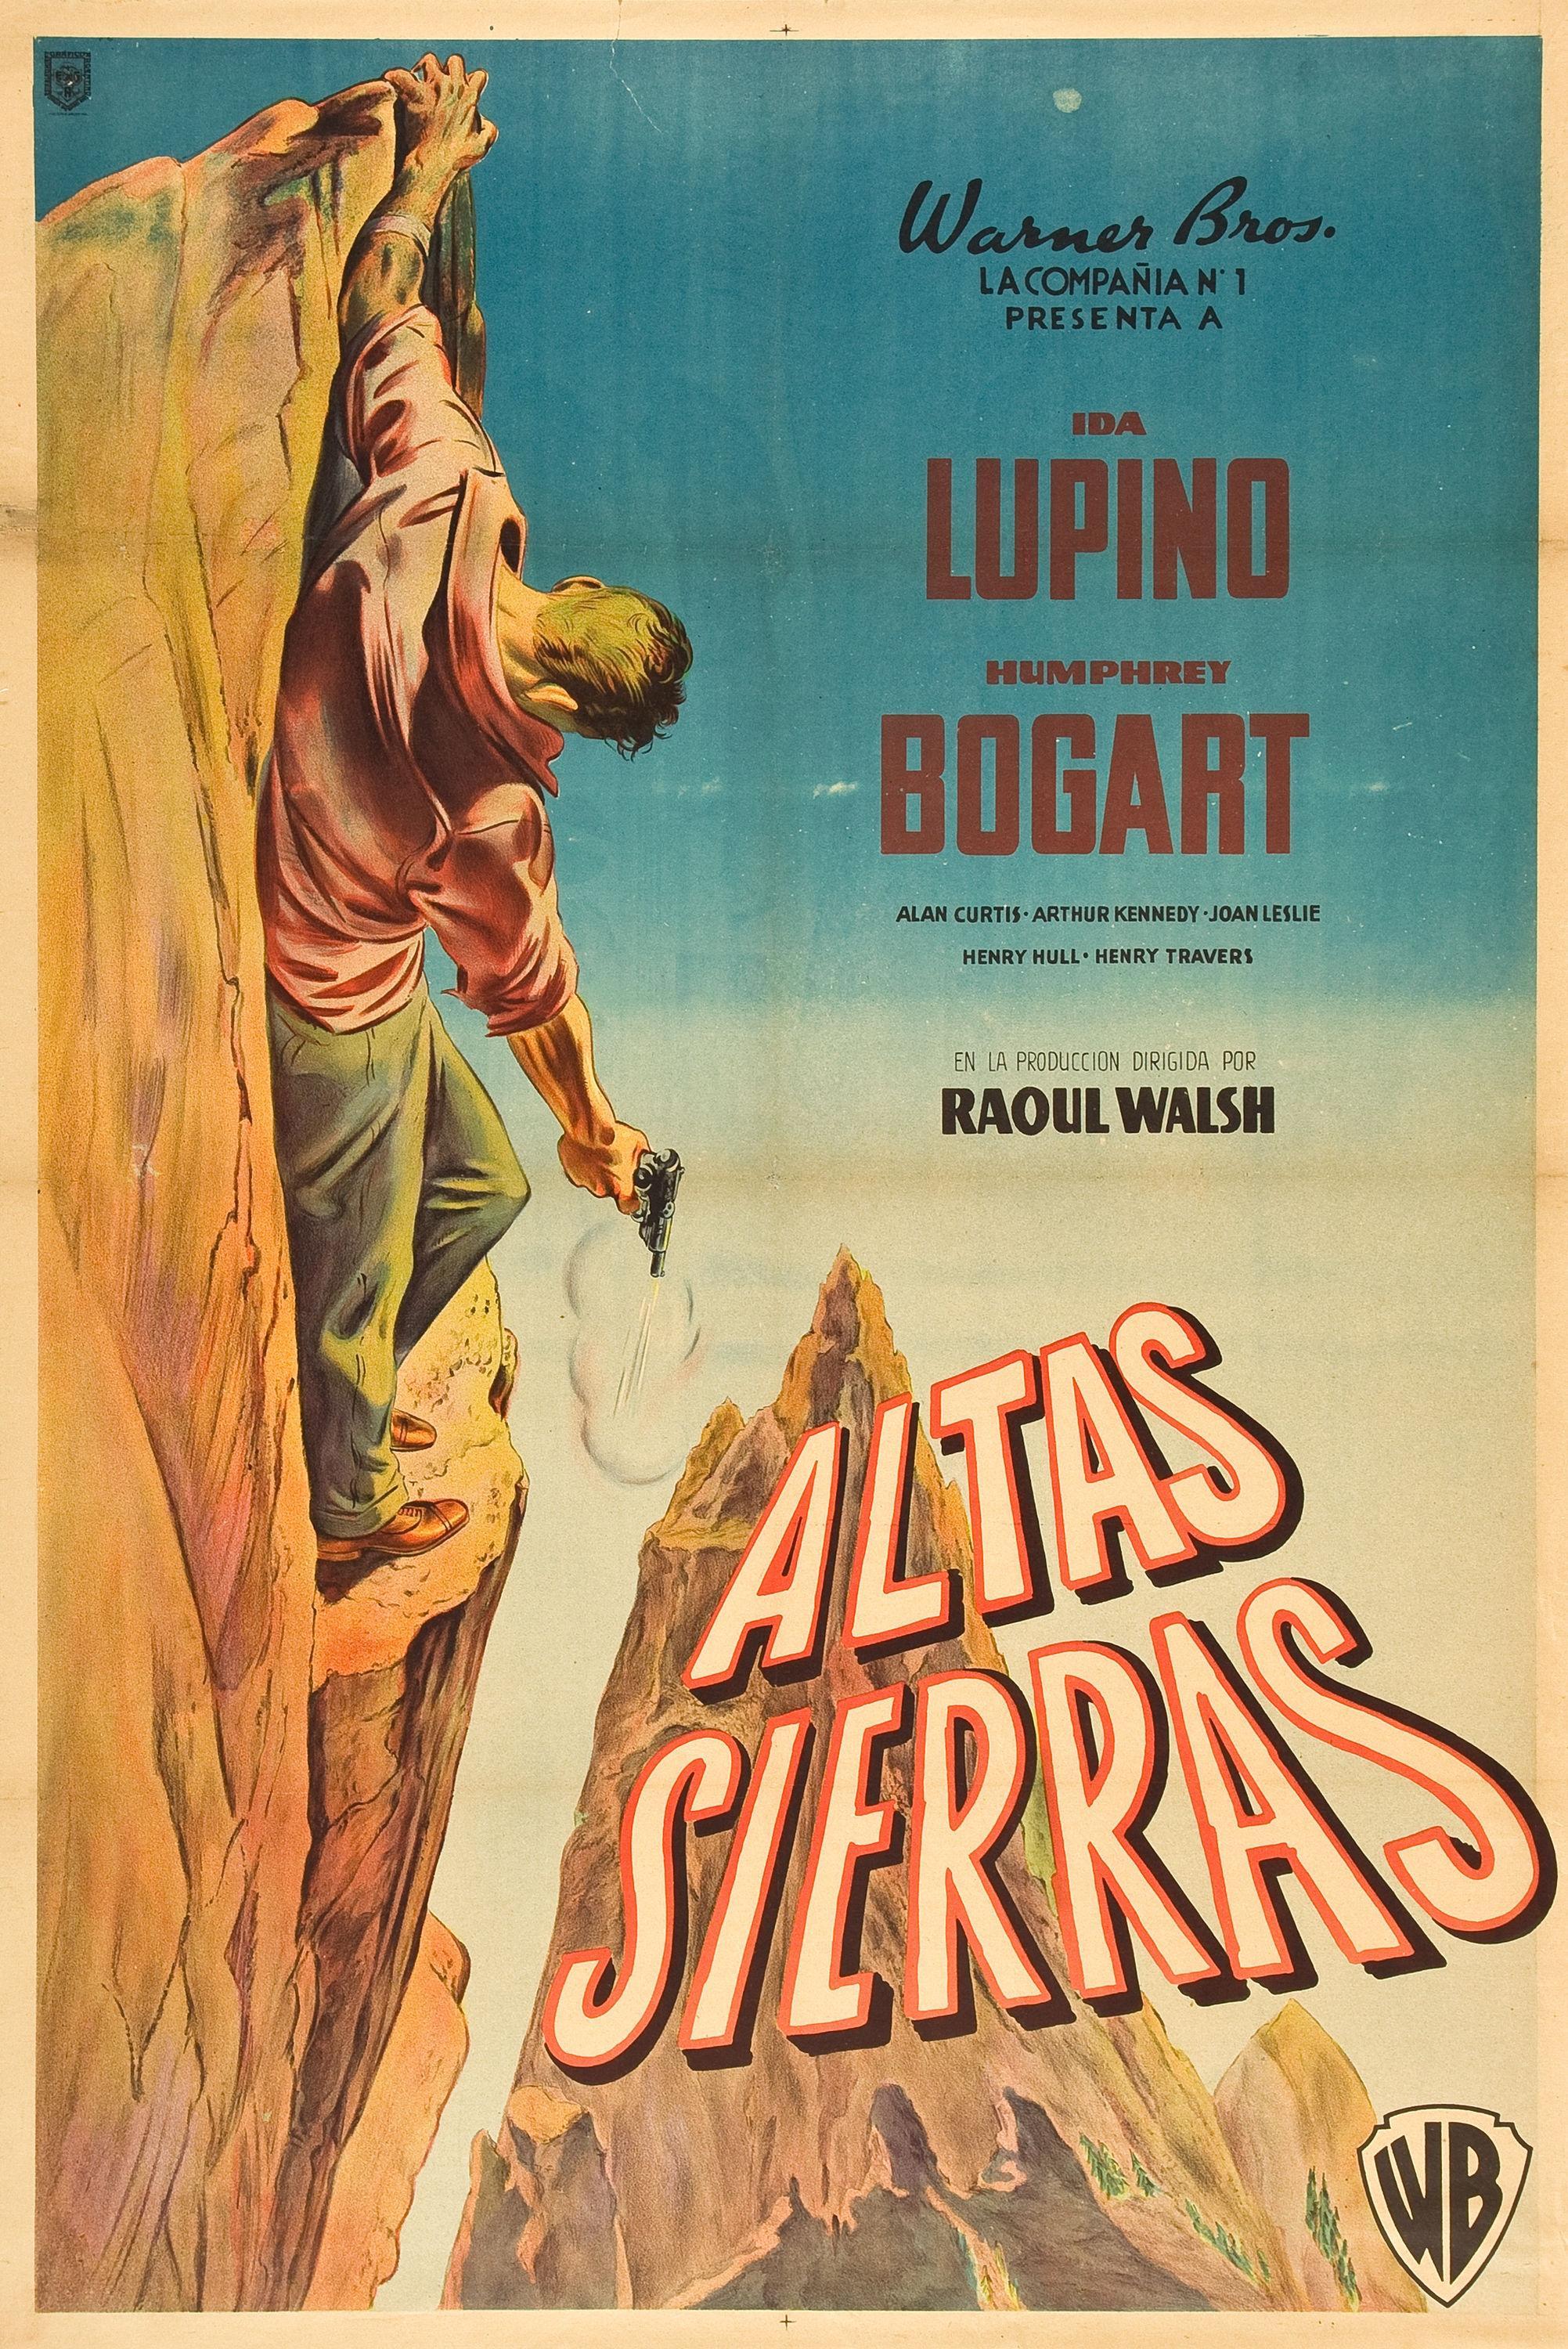 Постер фильма Высокая Сьерра | High Sierra